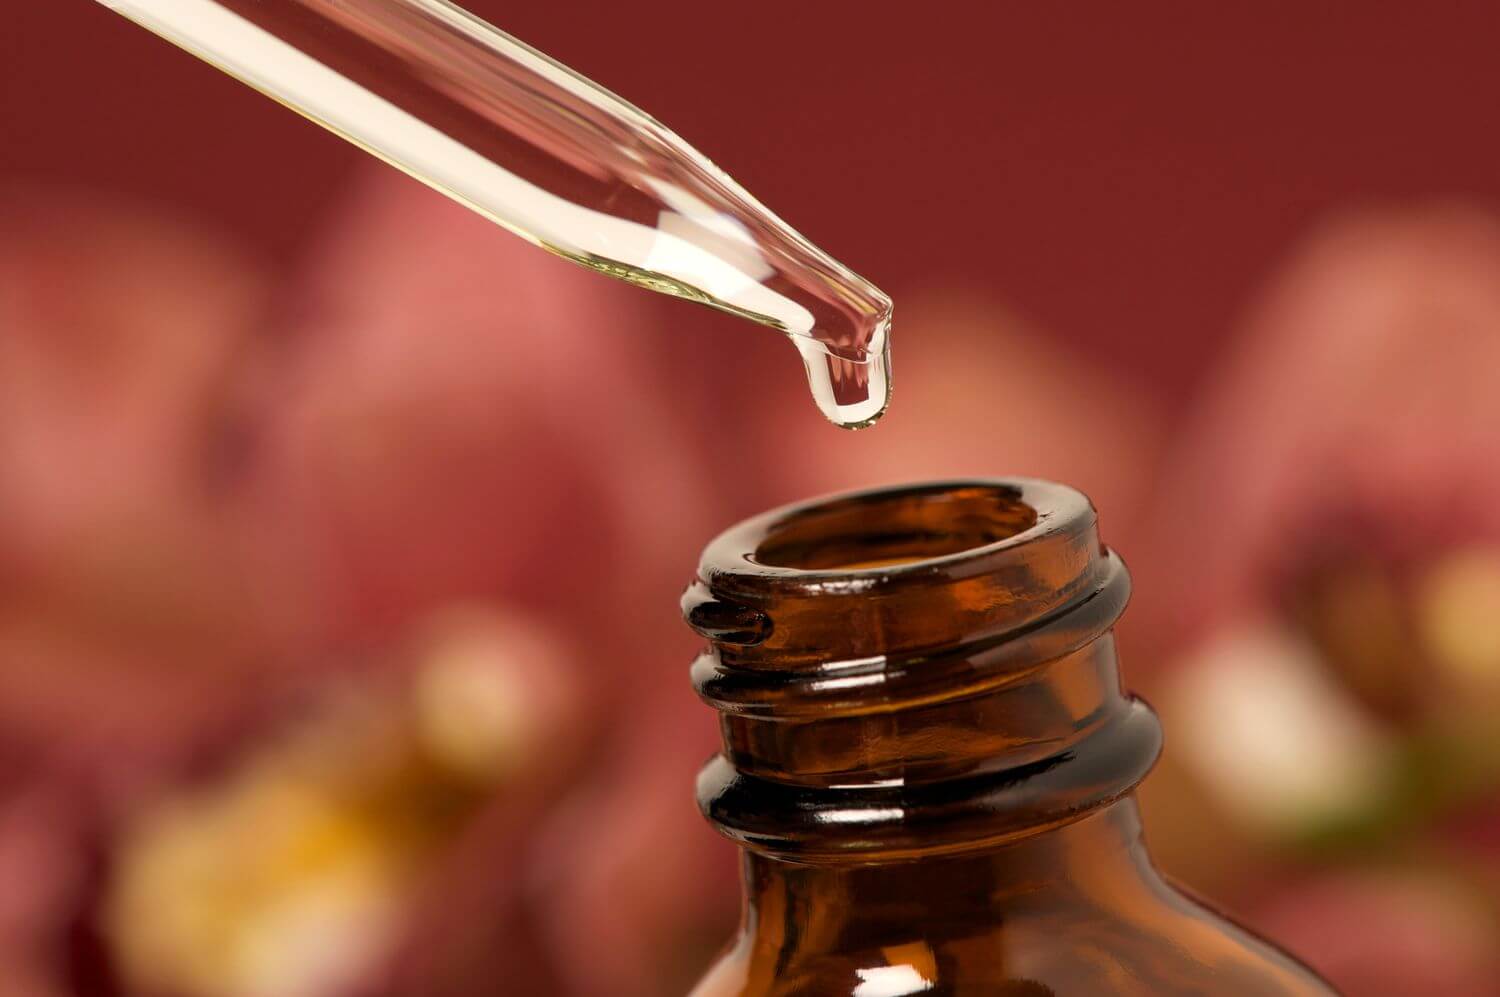 is castor oil good for thyroid